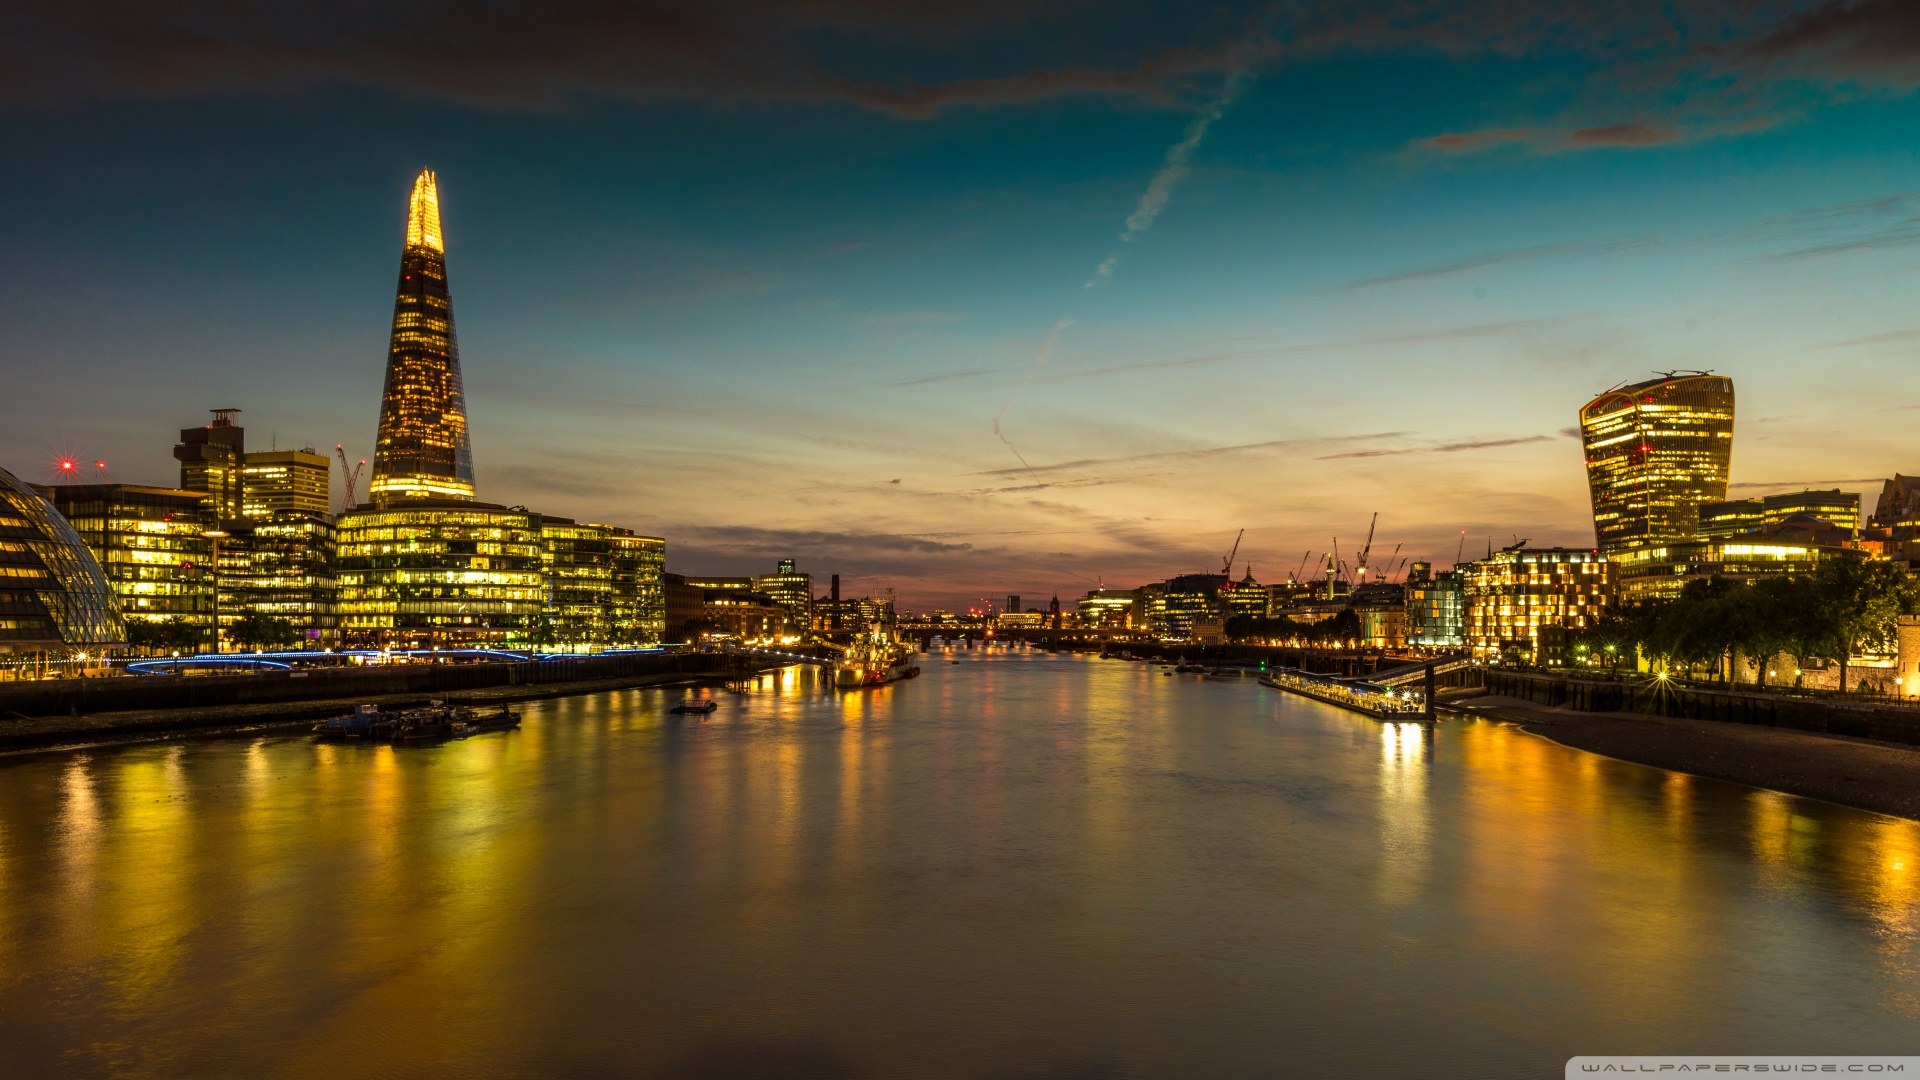 River Thames, England Ultra HD Desktop Background Wallpaper for ...